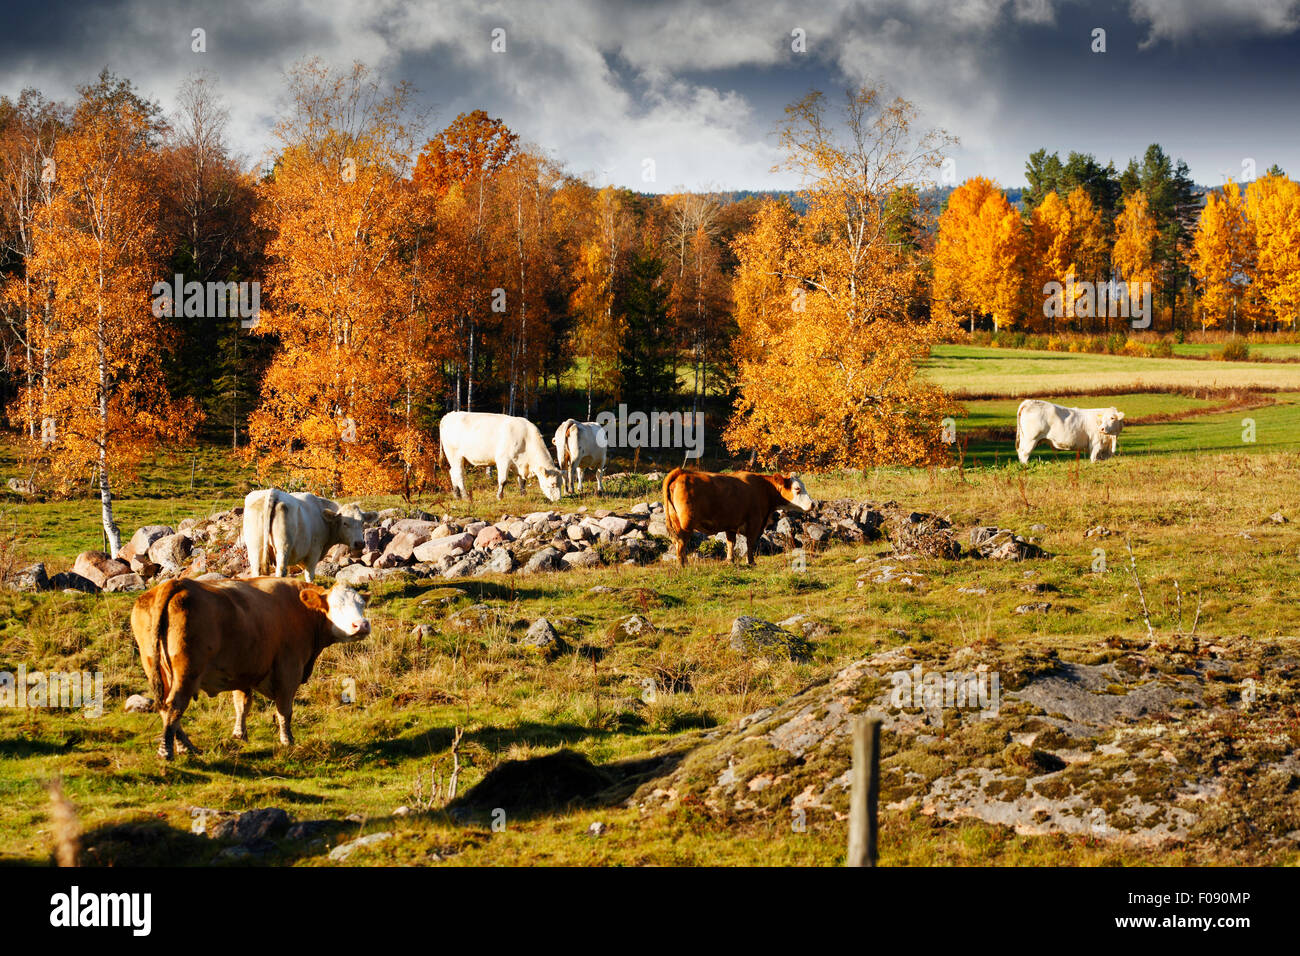 Le pâturage des vaches, bovins, dans une vieille nature rurale dans smaland, Suède Banque D'Images